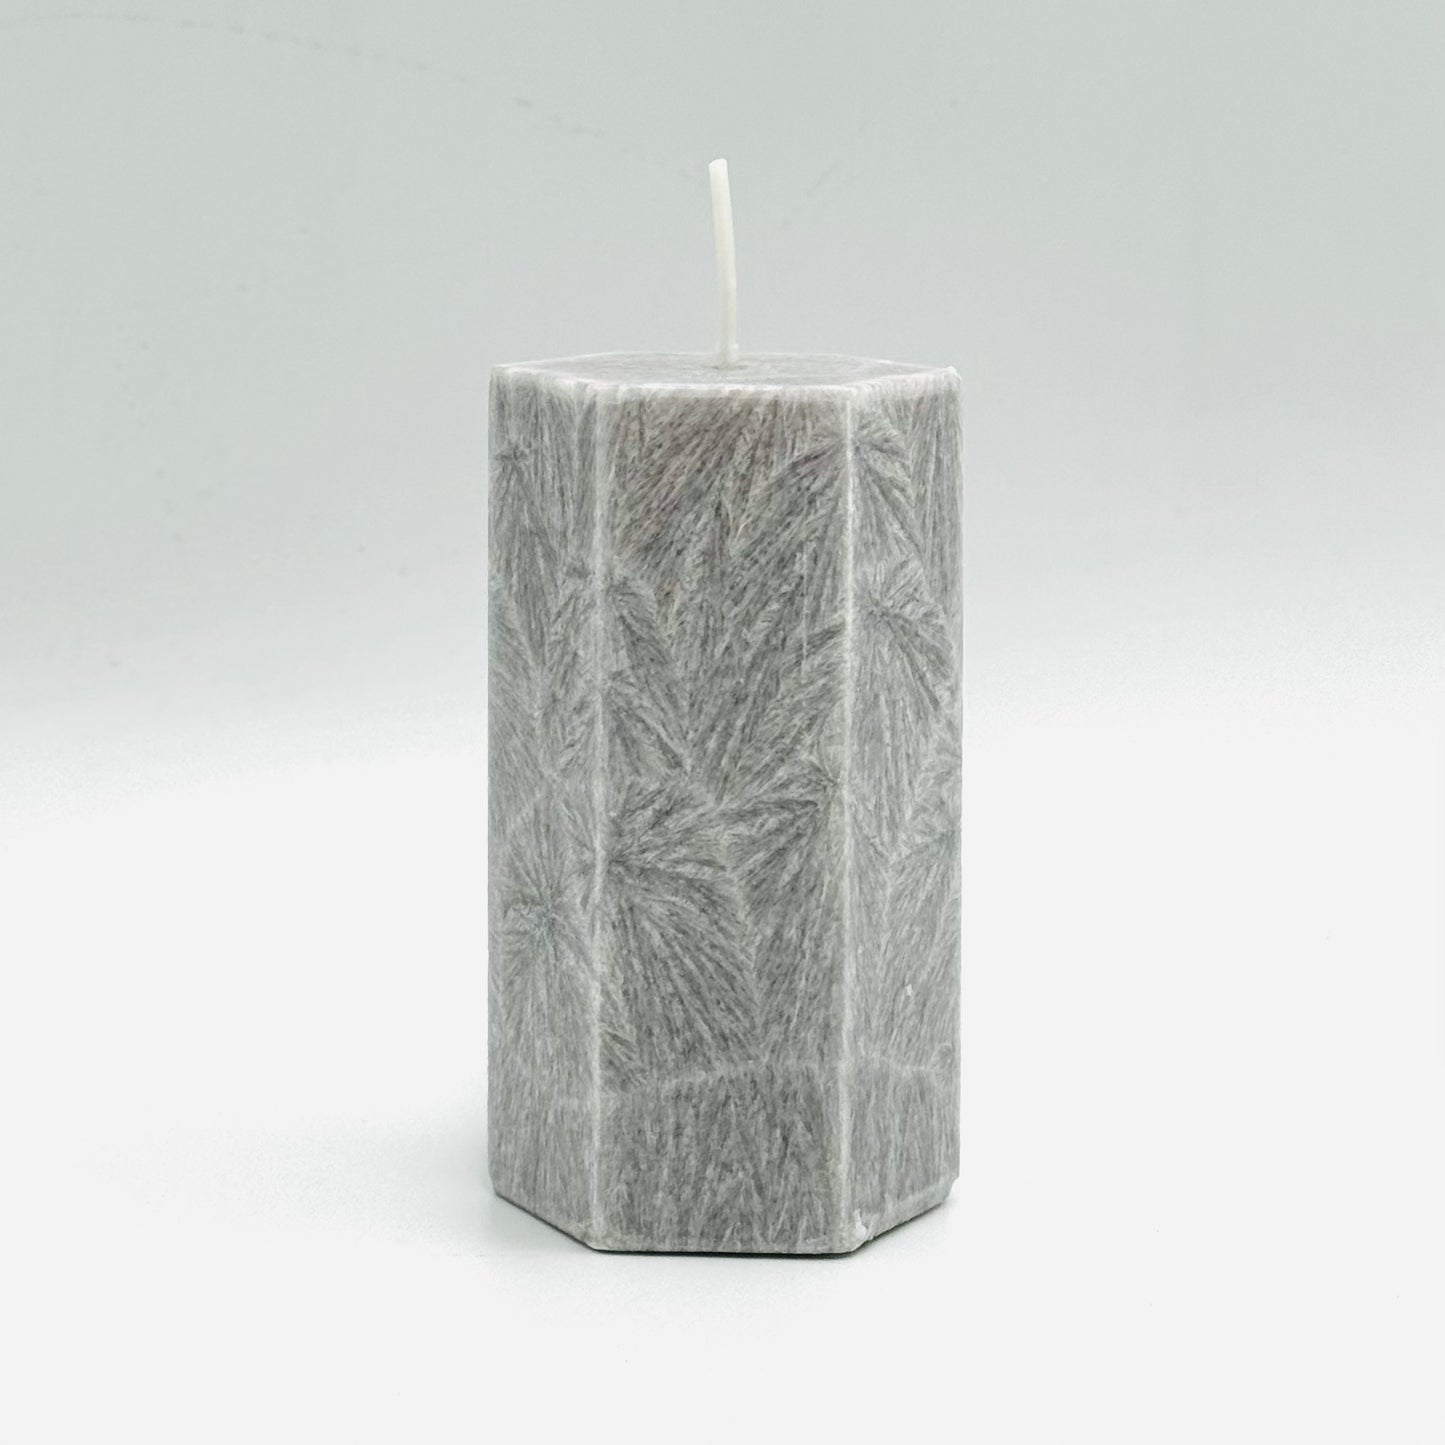 Кристаллическая стеарин свеча ⌀ 5х10 см, бежевая